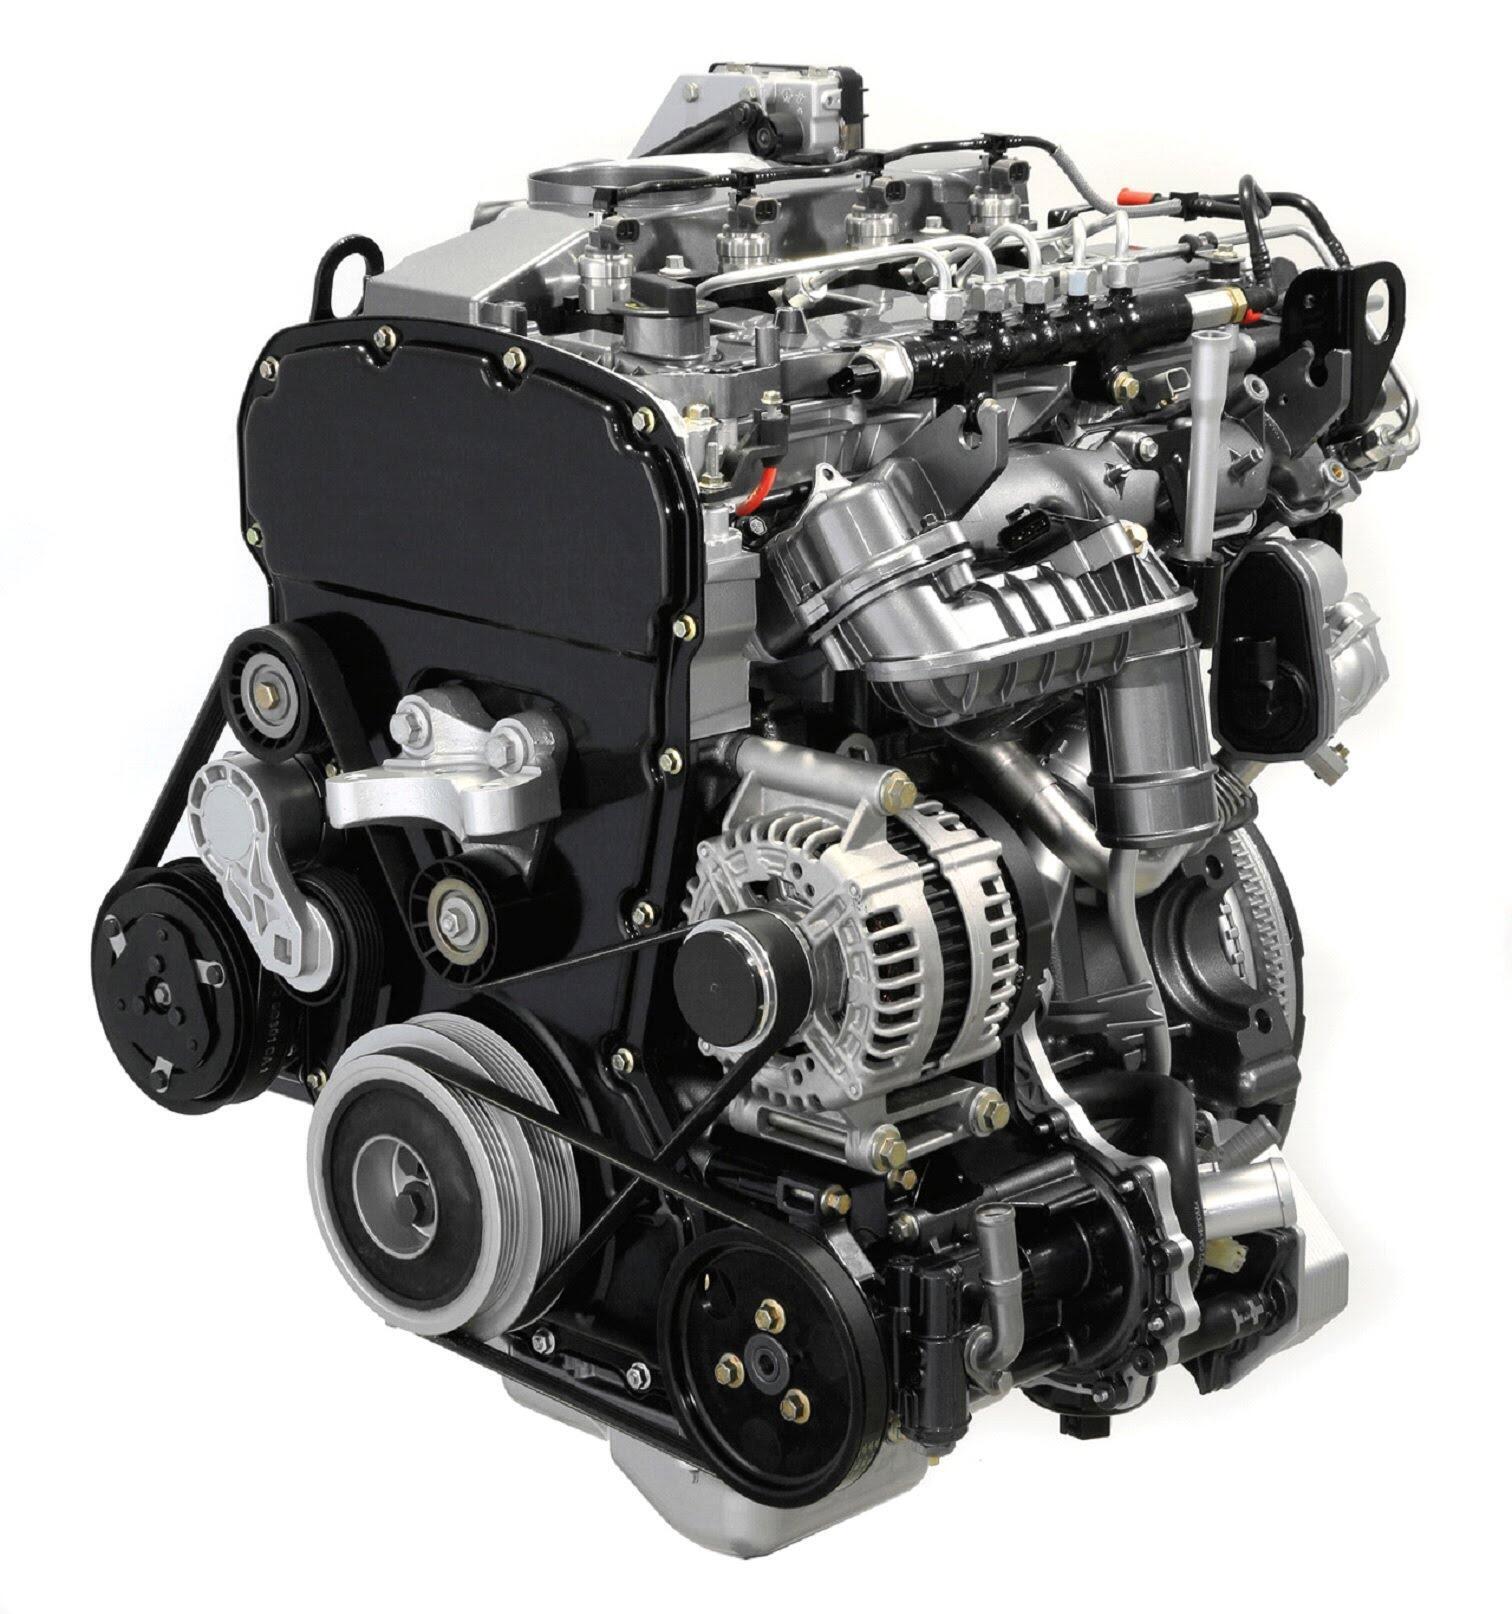 Transit được trang bị động cơ Duratorq 2.4L TDCi Turbo Diesel sử dụng công nghệ tiên tiến nhất để tạo ra sức mạnh vượt trội mà vẫn tiết kiệm nhiên liệu. 